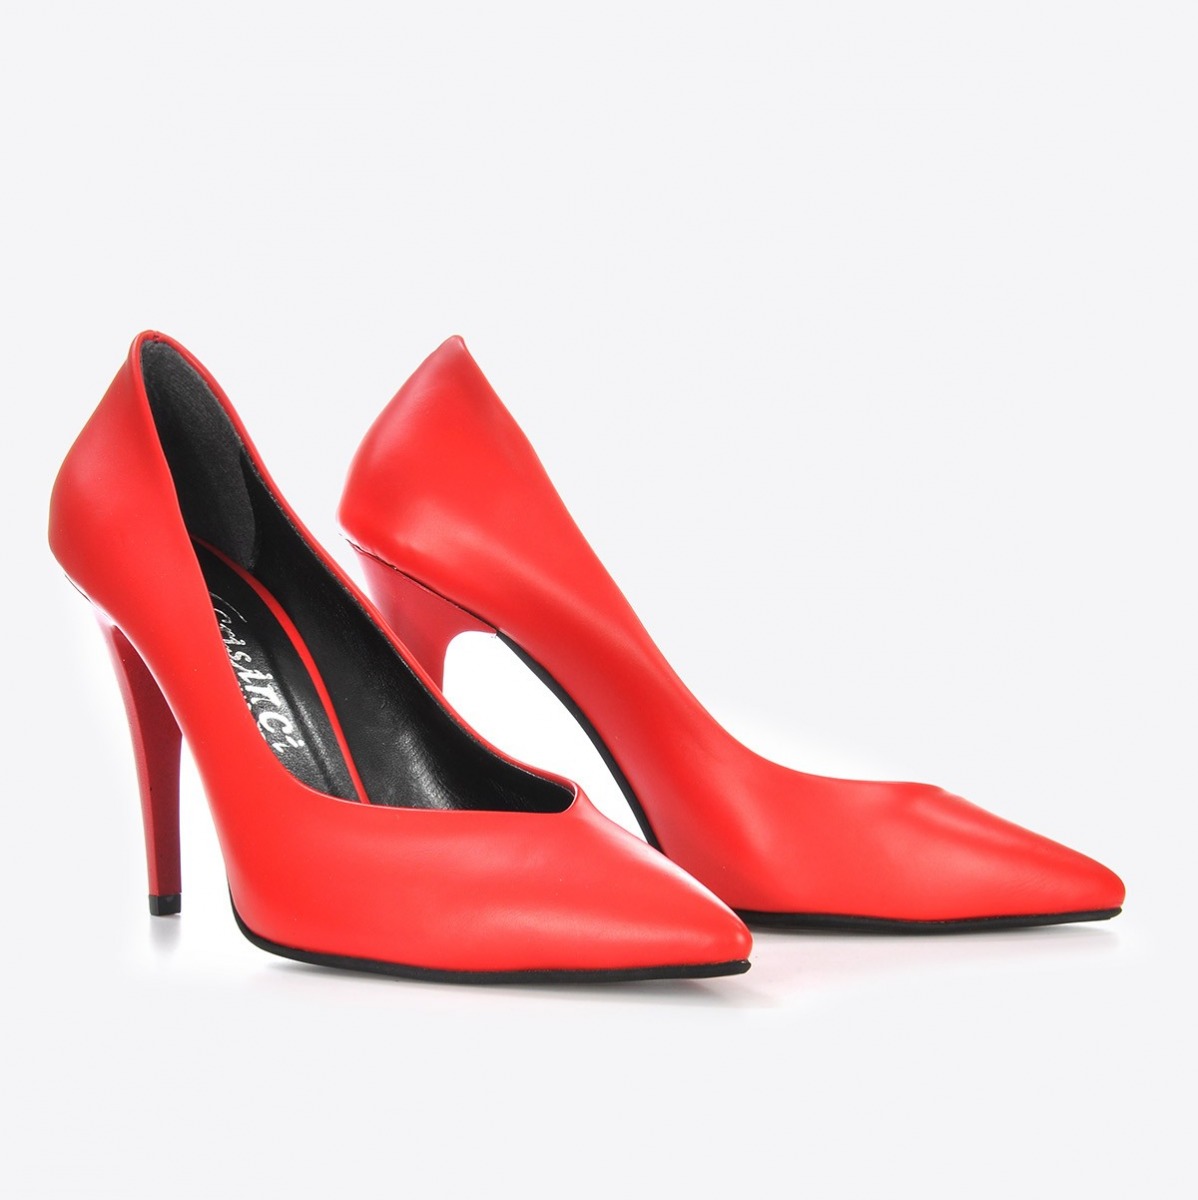 Flo Kadın  Kırmızı Klasik Topuklu Ayakkabı VZN21-005Y. 4